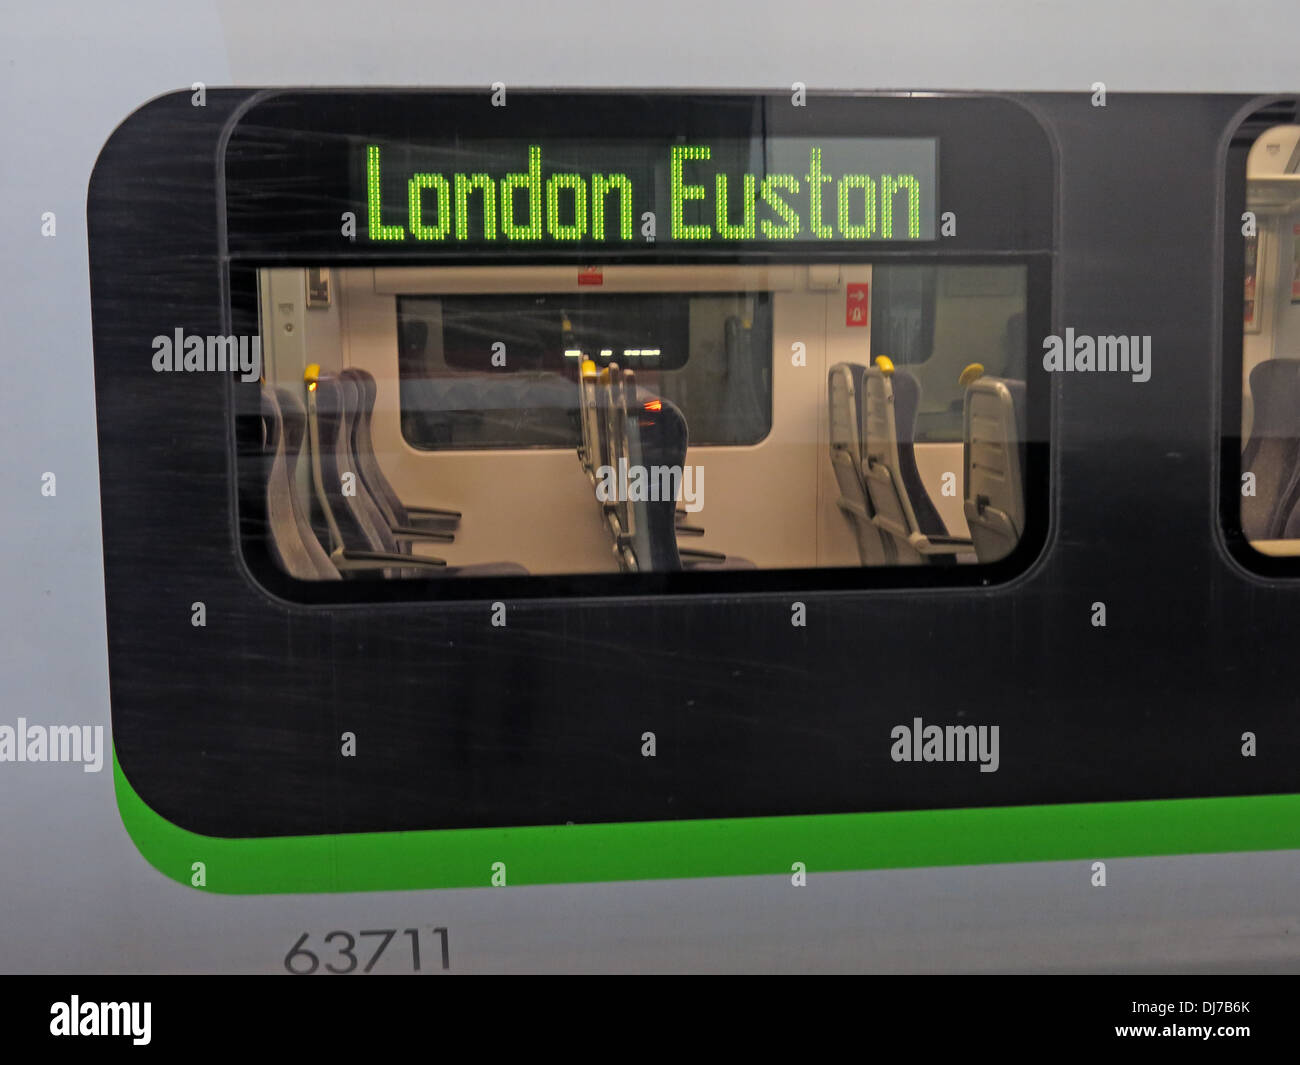 London Midland Railway Coach 63711, presso la stazione ferroviaria di Londra Euston Inghilterra Regno Unito Foto Stock